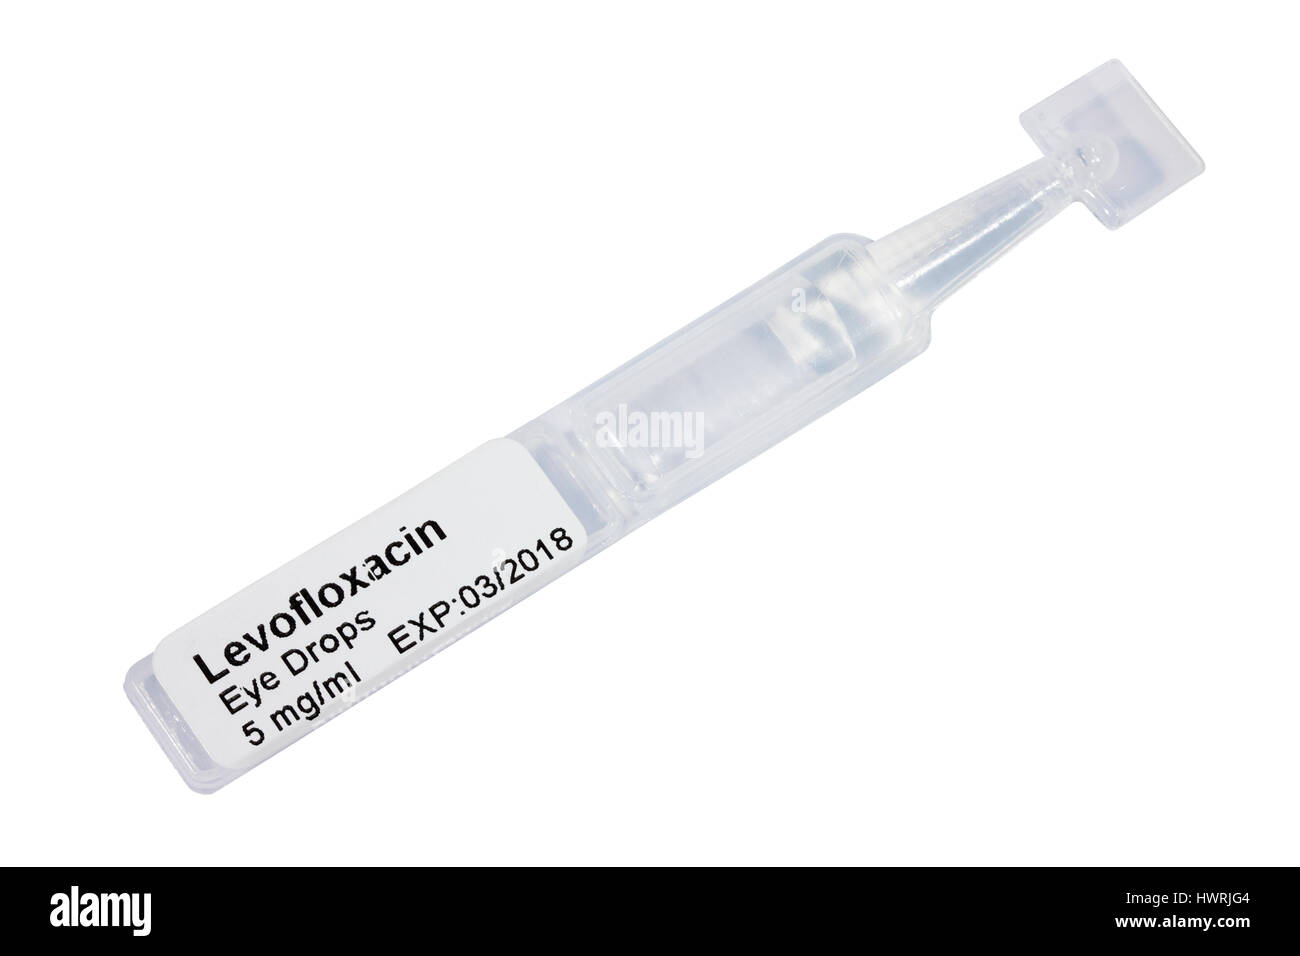 Oftaquix 5mg/ml Levofloxacin Einzeldosis Auge Tropfen Lösung 0,3 ml Ampulle / Ampulle / Kapsel / pipette / Pipette isoliert auf weißem Hintergrund Stockfoto